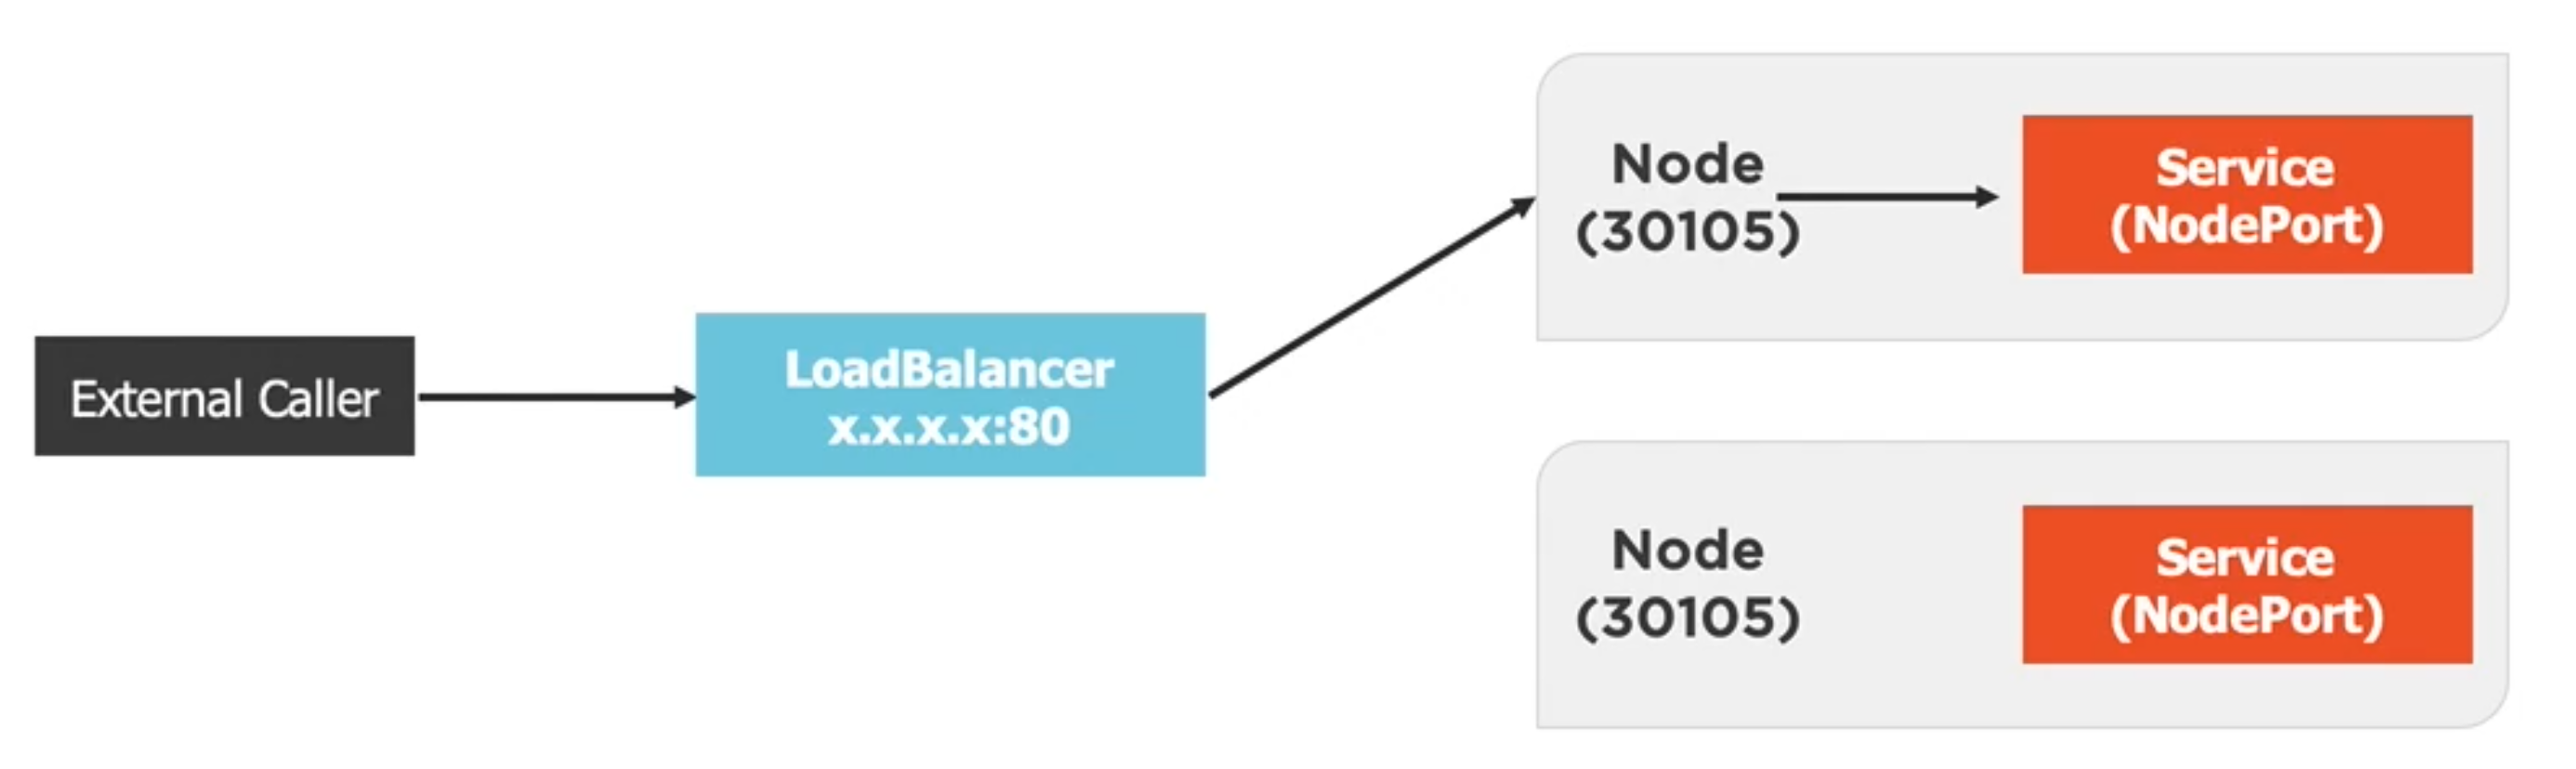 LoadBalancer Diagram 1